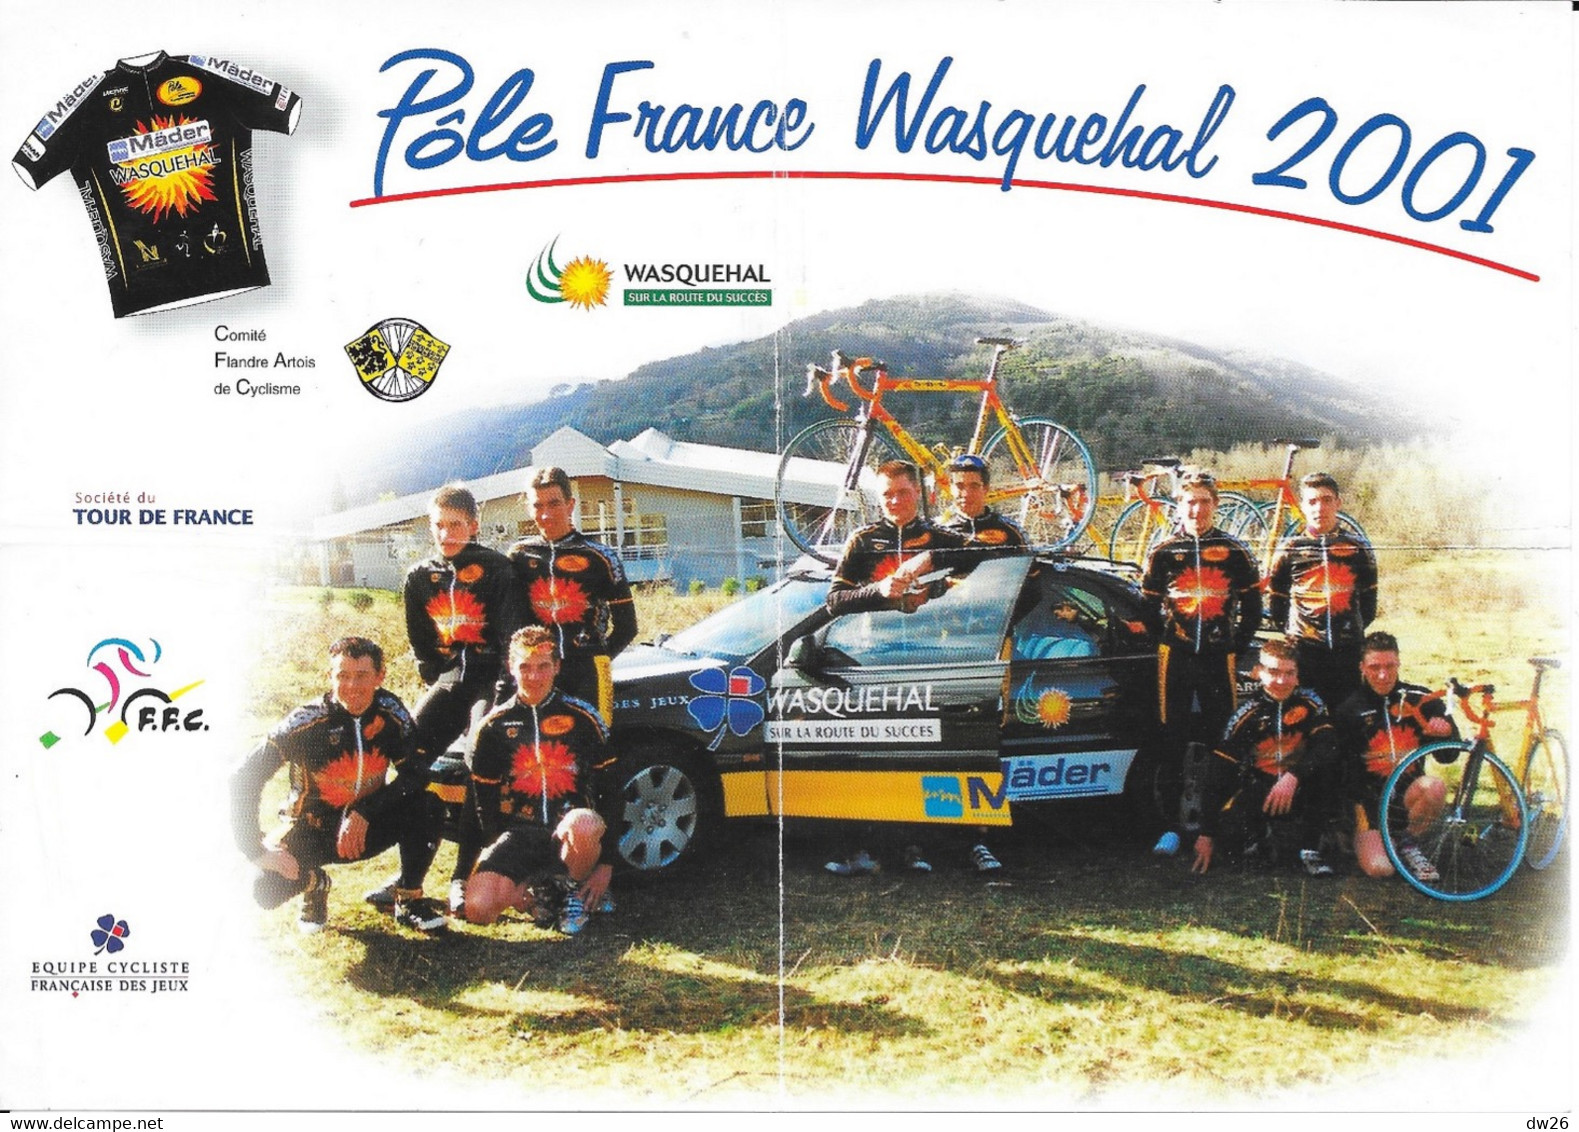 Fiche Cyclisme - Présentation Du Pôle France Wasquehal (Nord) 2001 - Equipe Cycliste Et Staff + Publicités - Sports